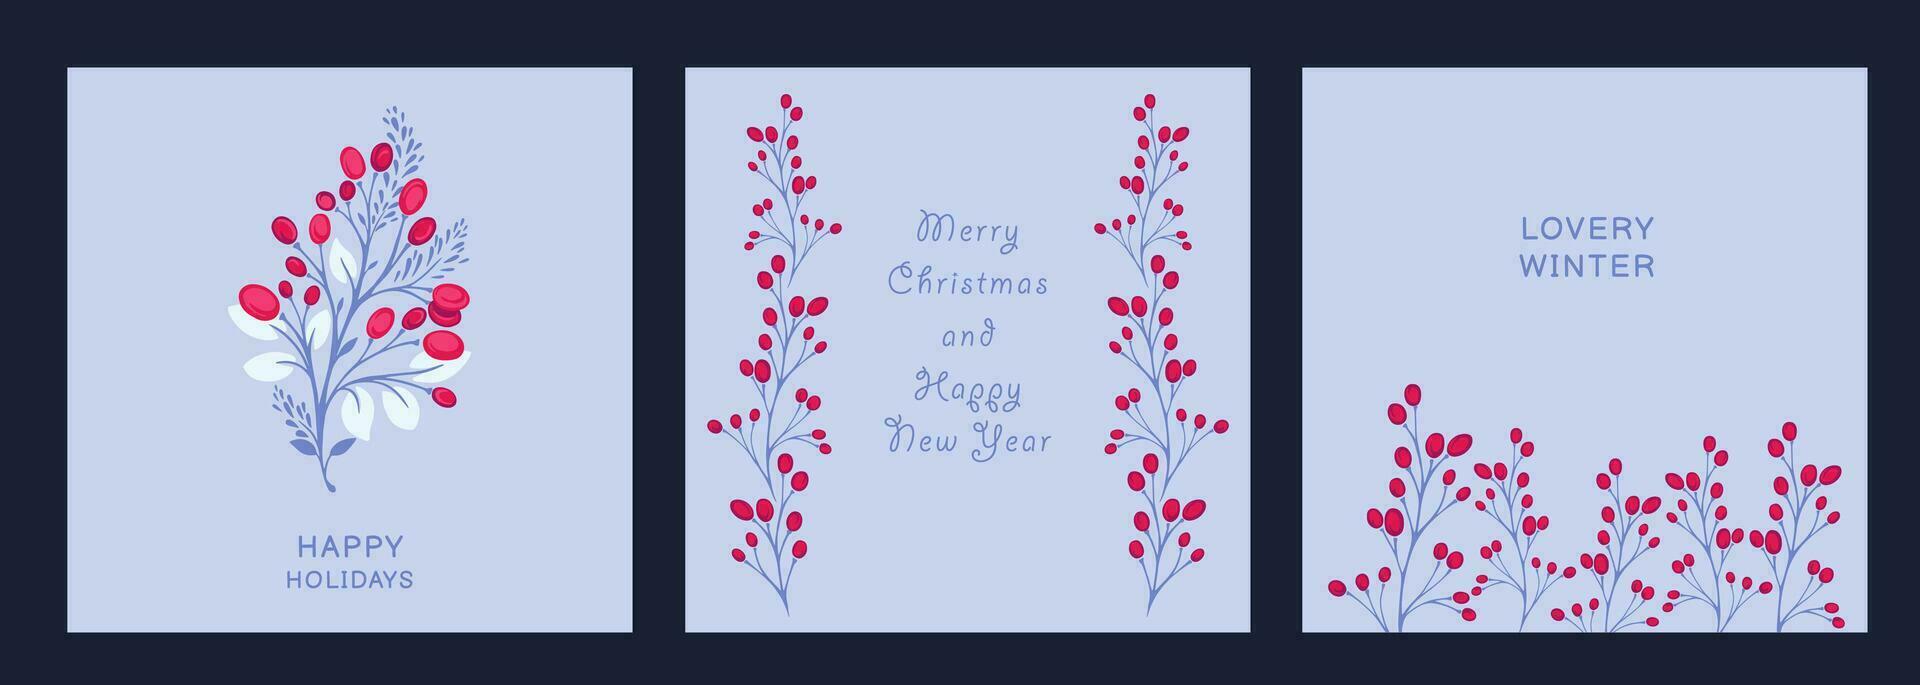 conjunto minimalista universal fiesta tarjetas invierno plantillas único floral mano dibujado ornamento. vector ilustraciones de impresión, corporativo invitación, saludo tarjetas, bandera